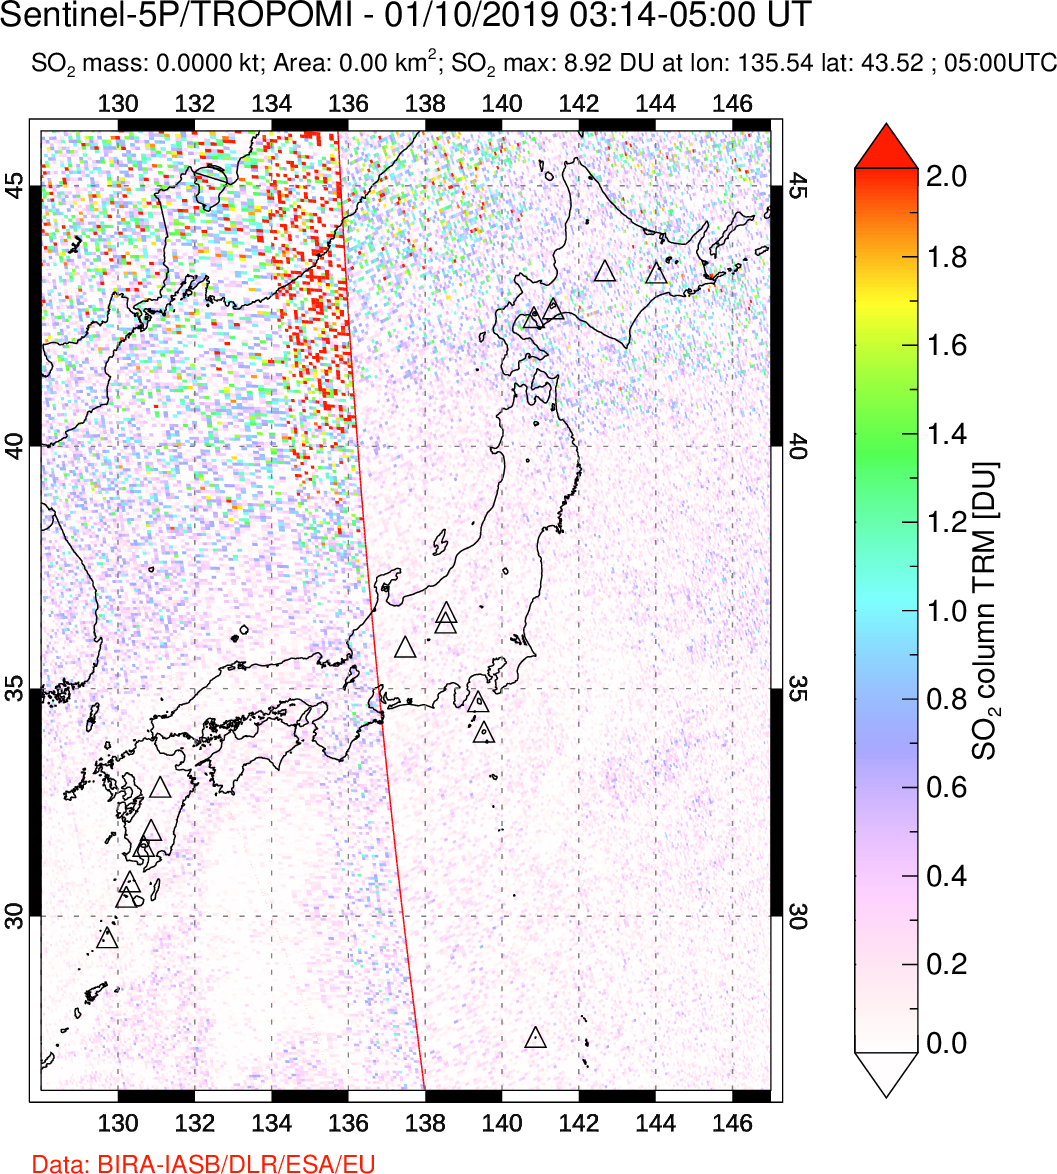 A sulfur dioxide image over Japan on Jan 10, 2019.